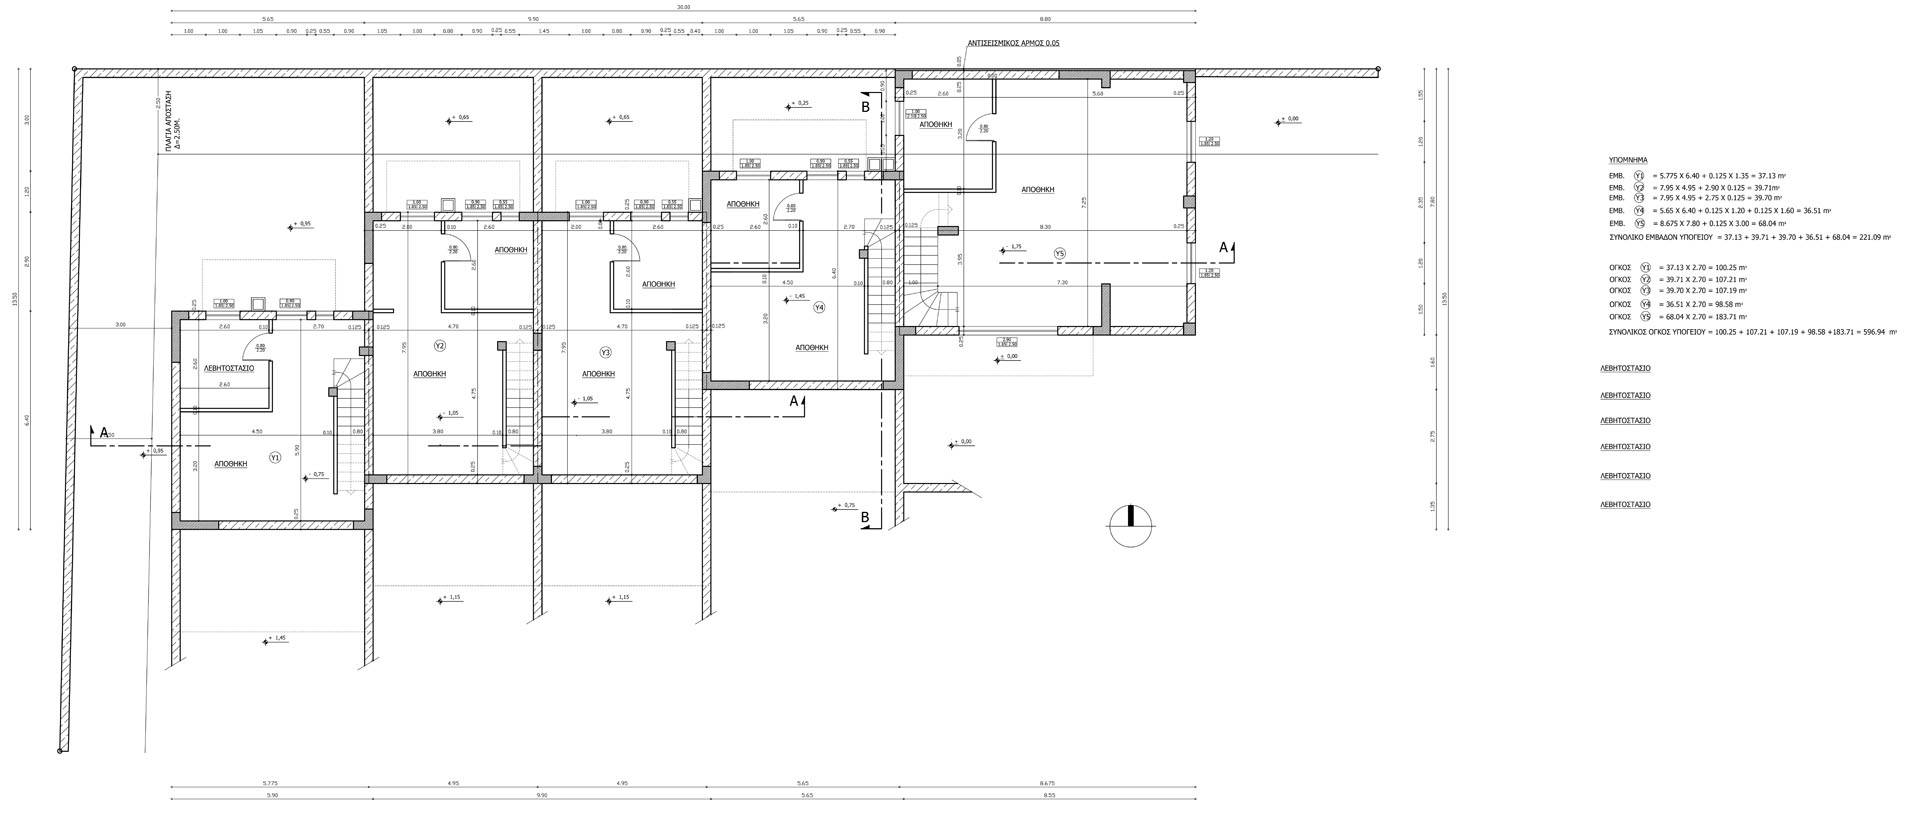 Basement floor plan - BizVA750